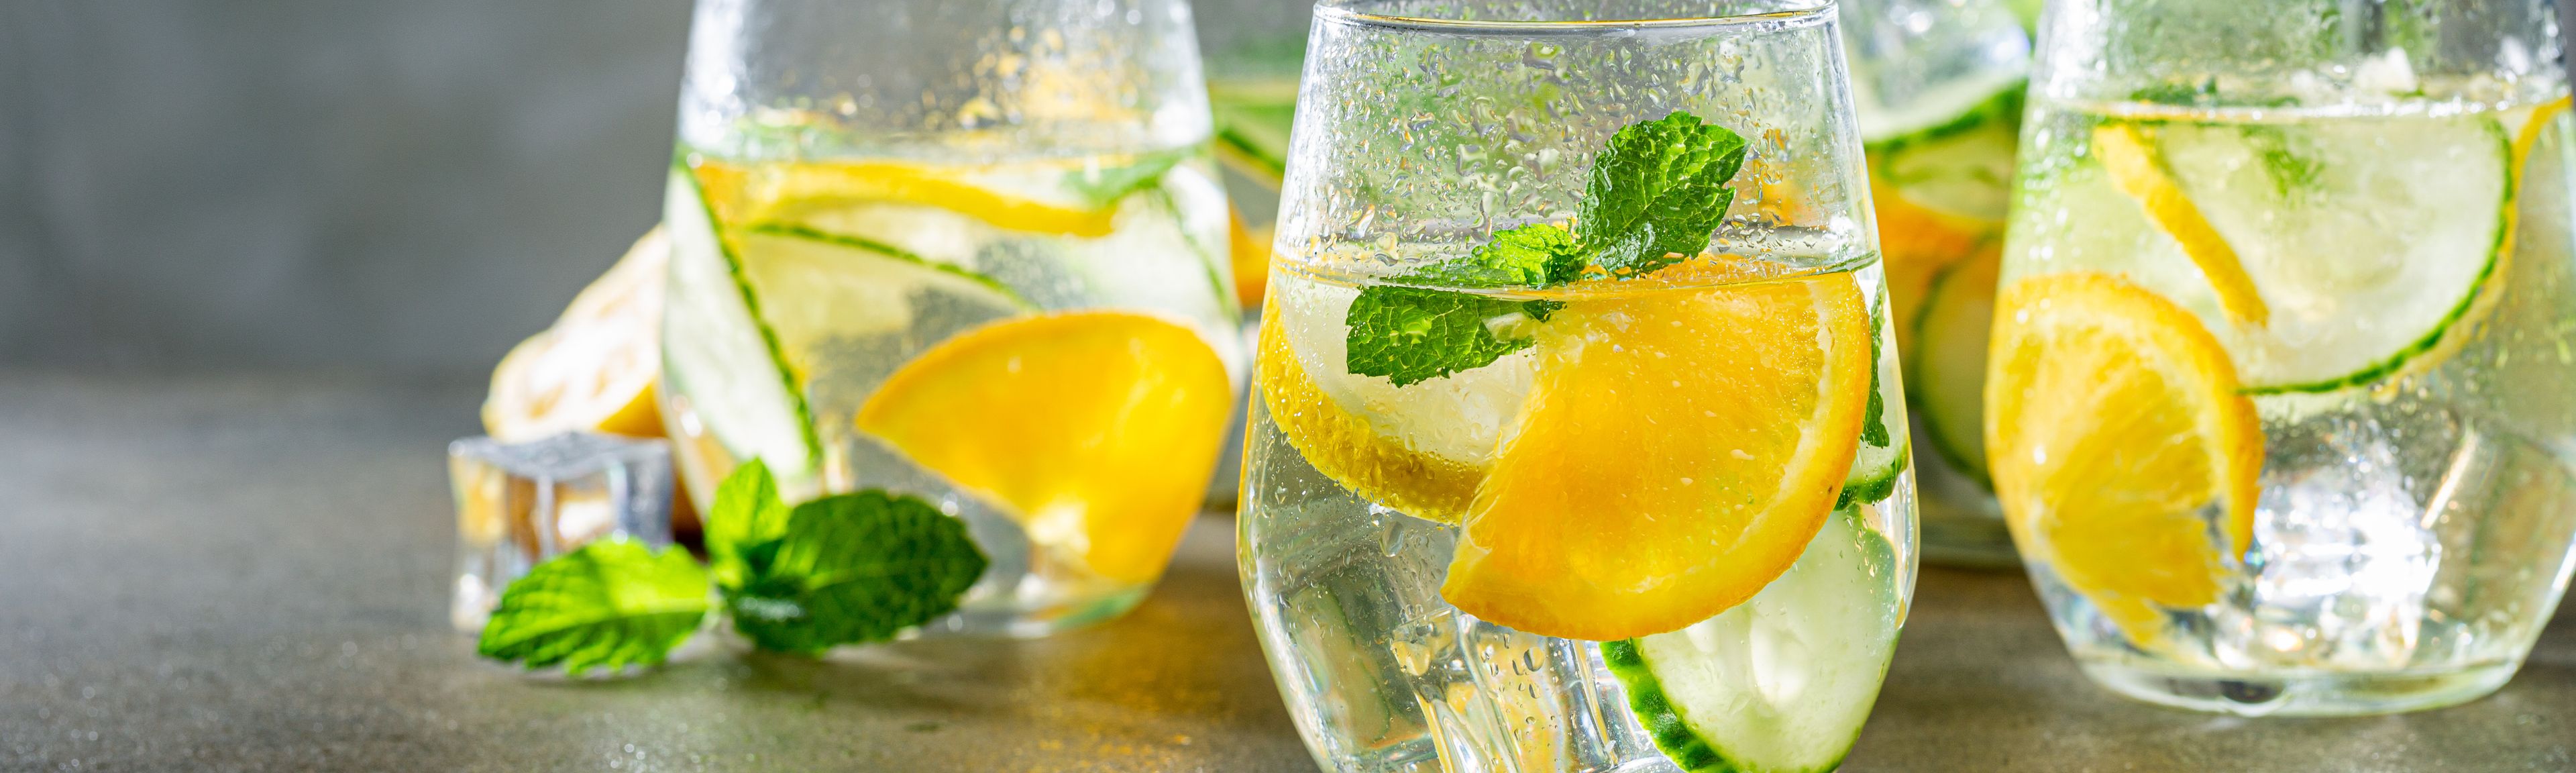 Gläser gefüllt mit Wasser und Zitrone sowie Gurke